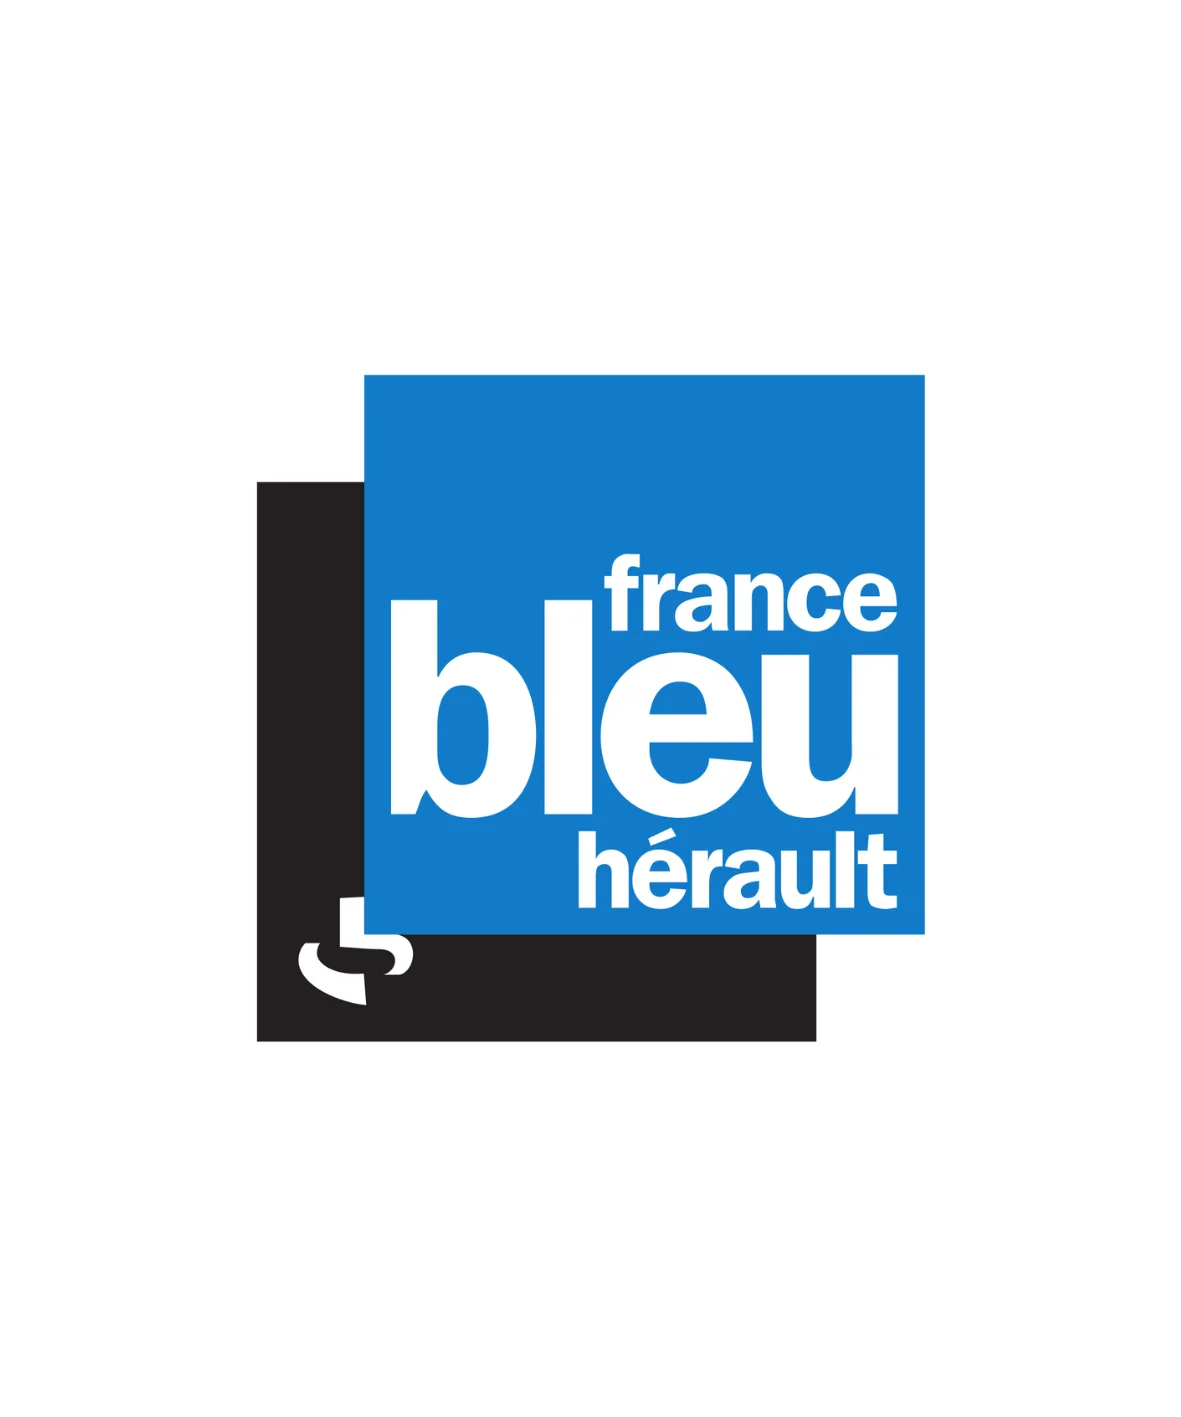 Logo France bleu Hérault